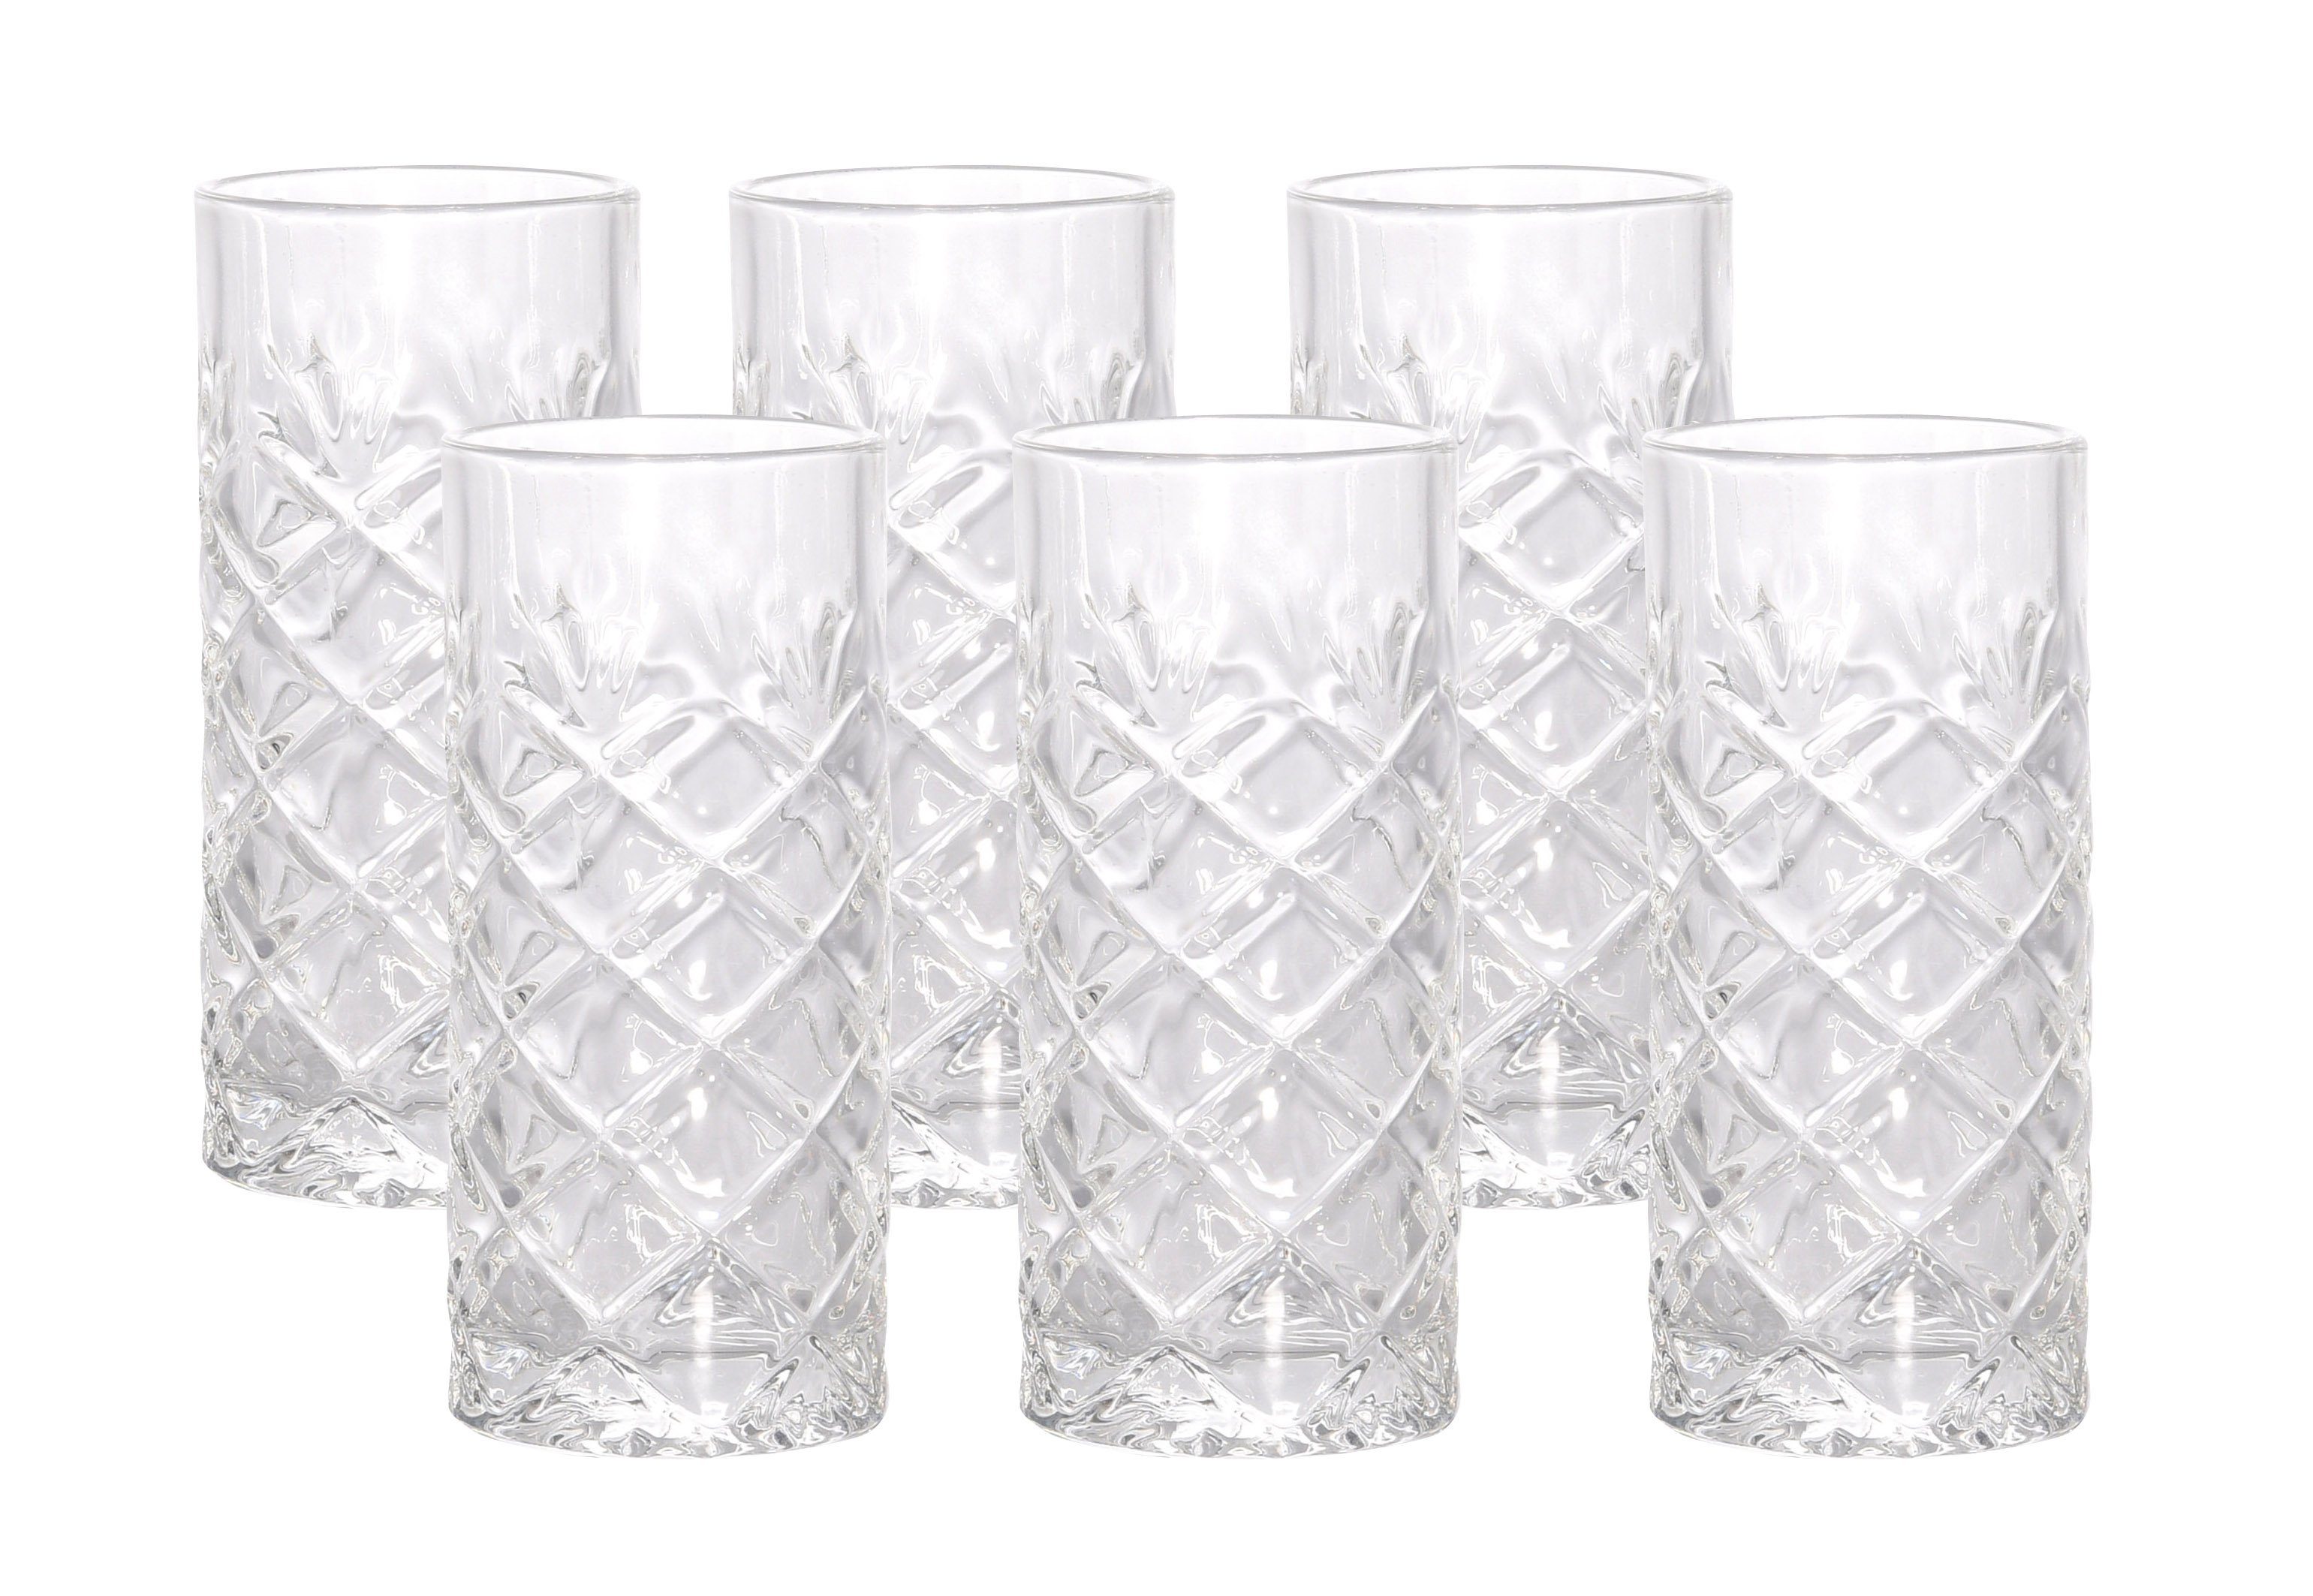 Spetebo Gläser-Set Wasser Gläser 250 ml, Glas, Trinkgläser mit Rauten Muster